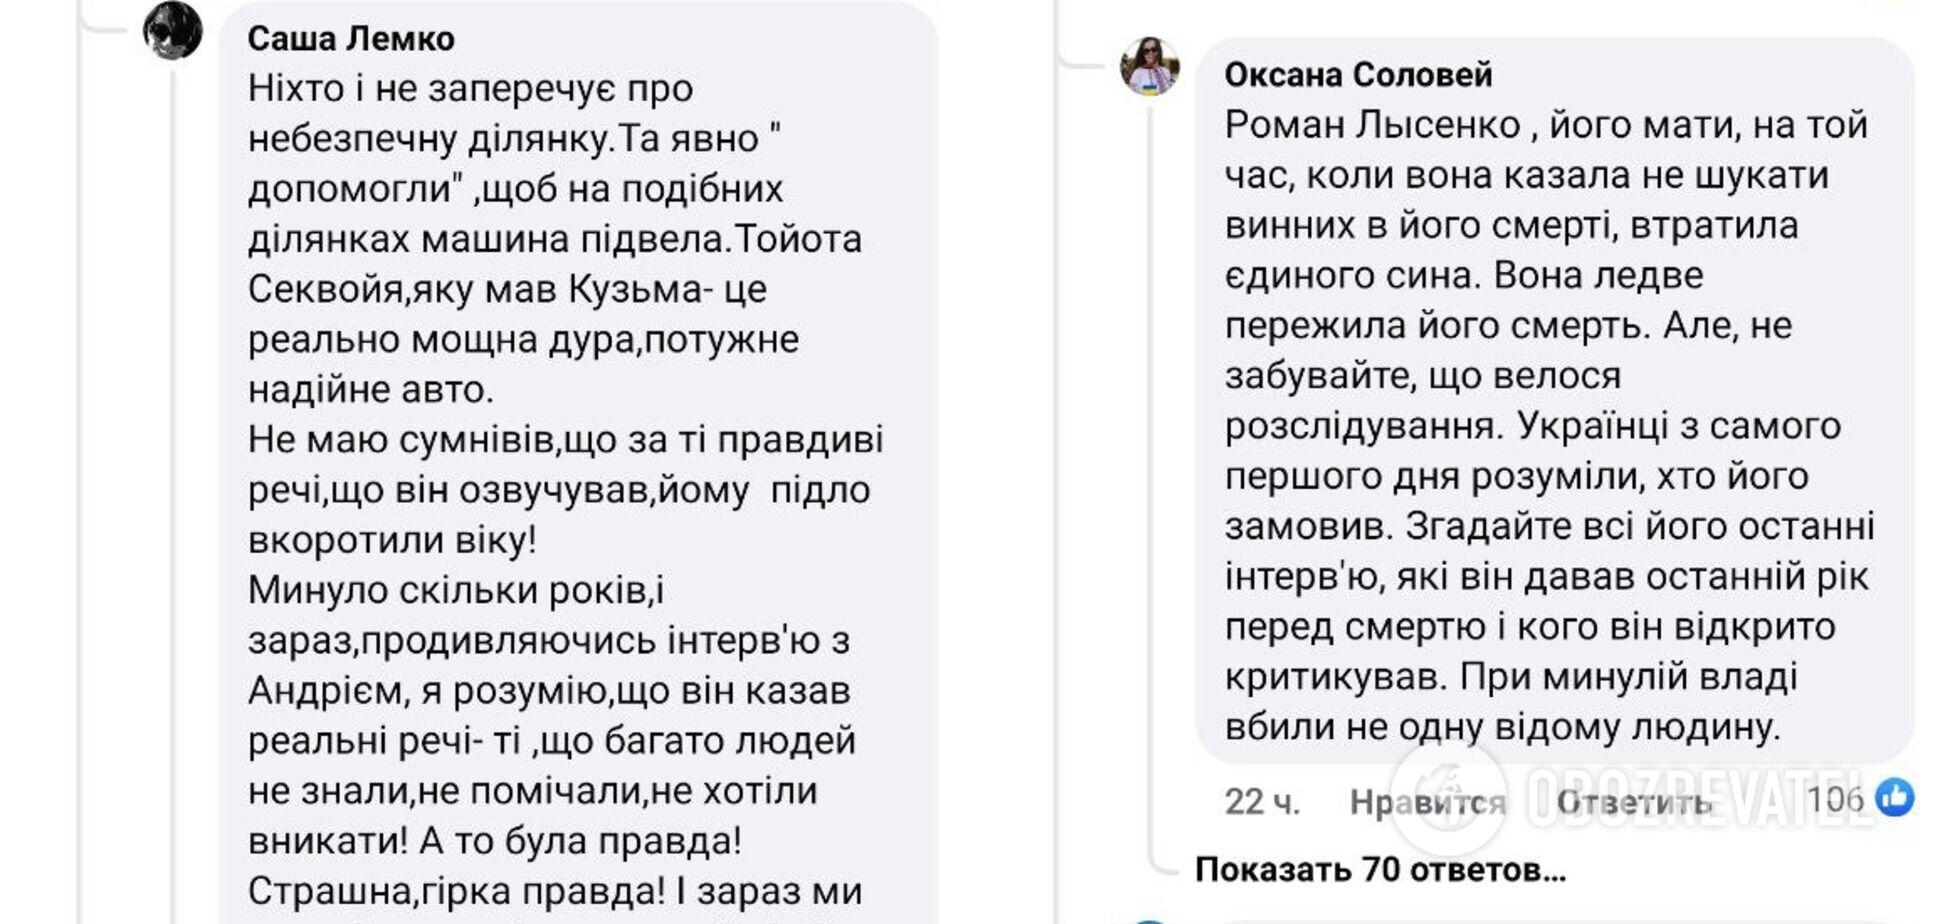 В сети обсуждают смерть Кузьмы Скрябина.